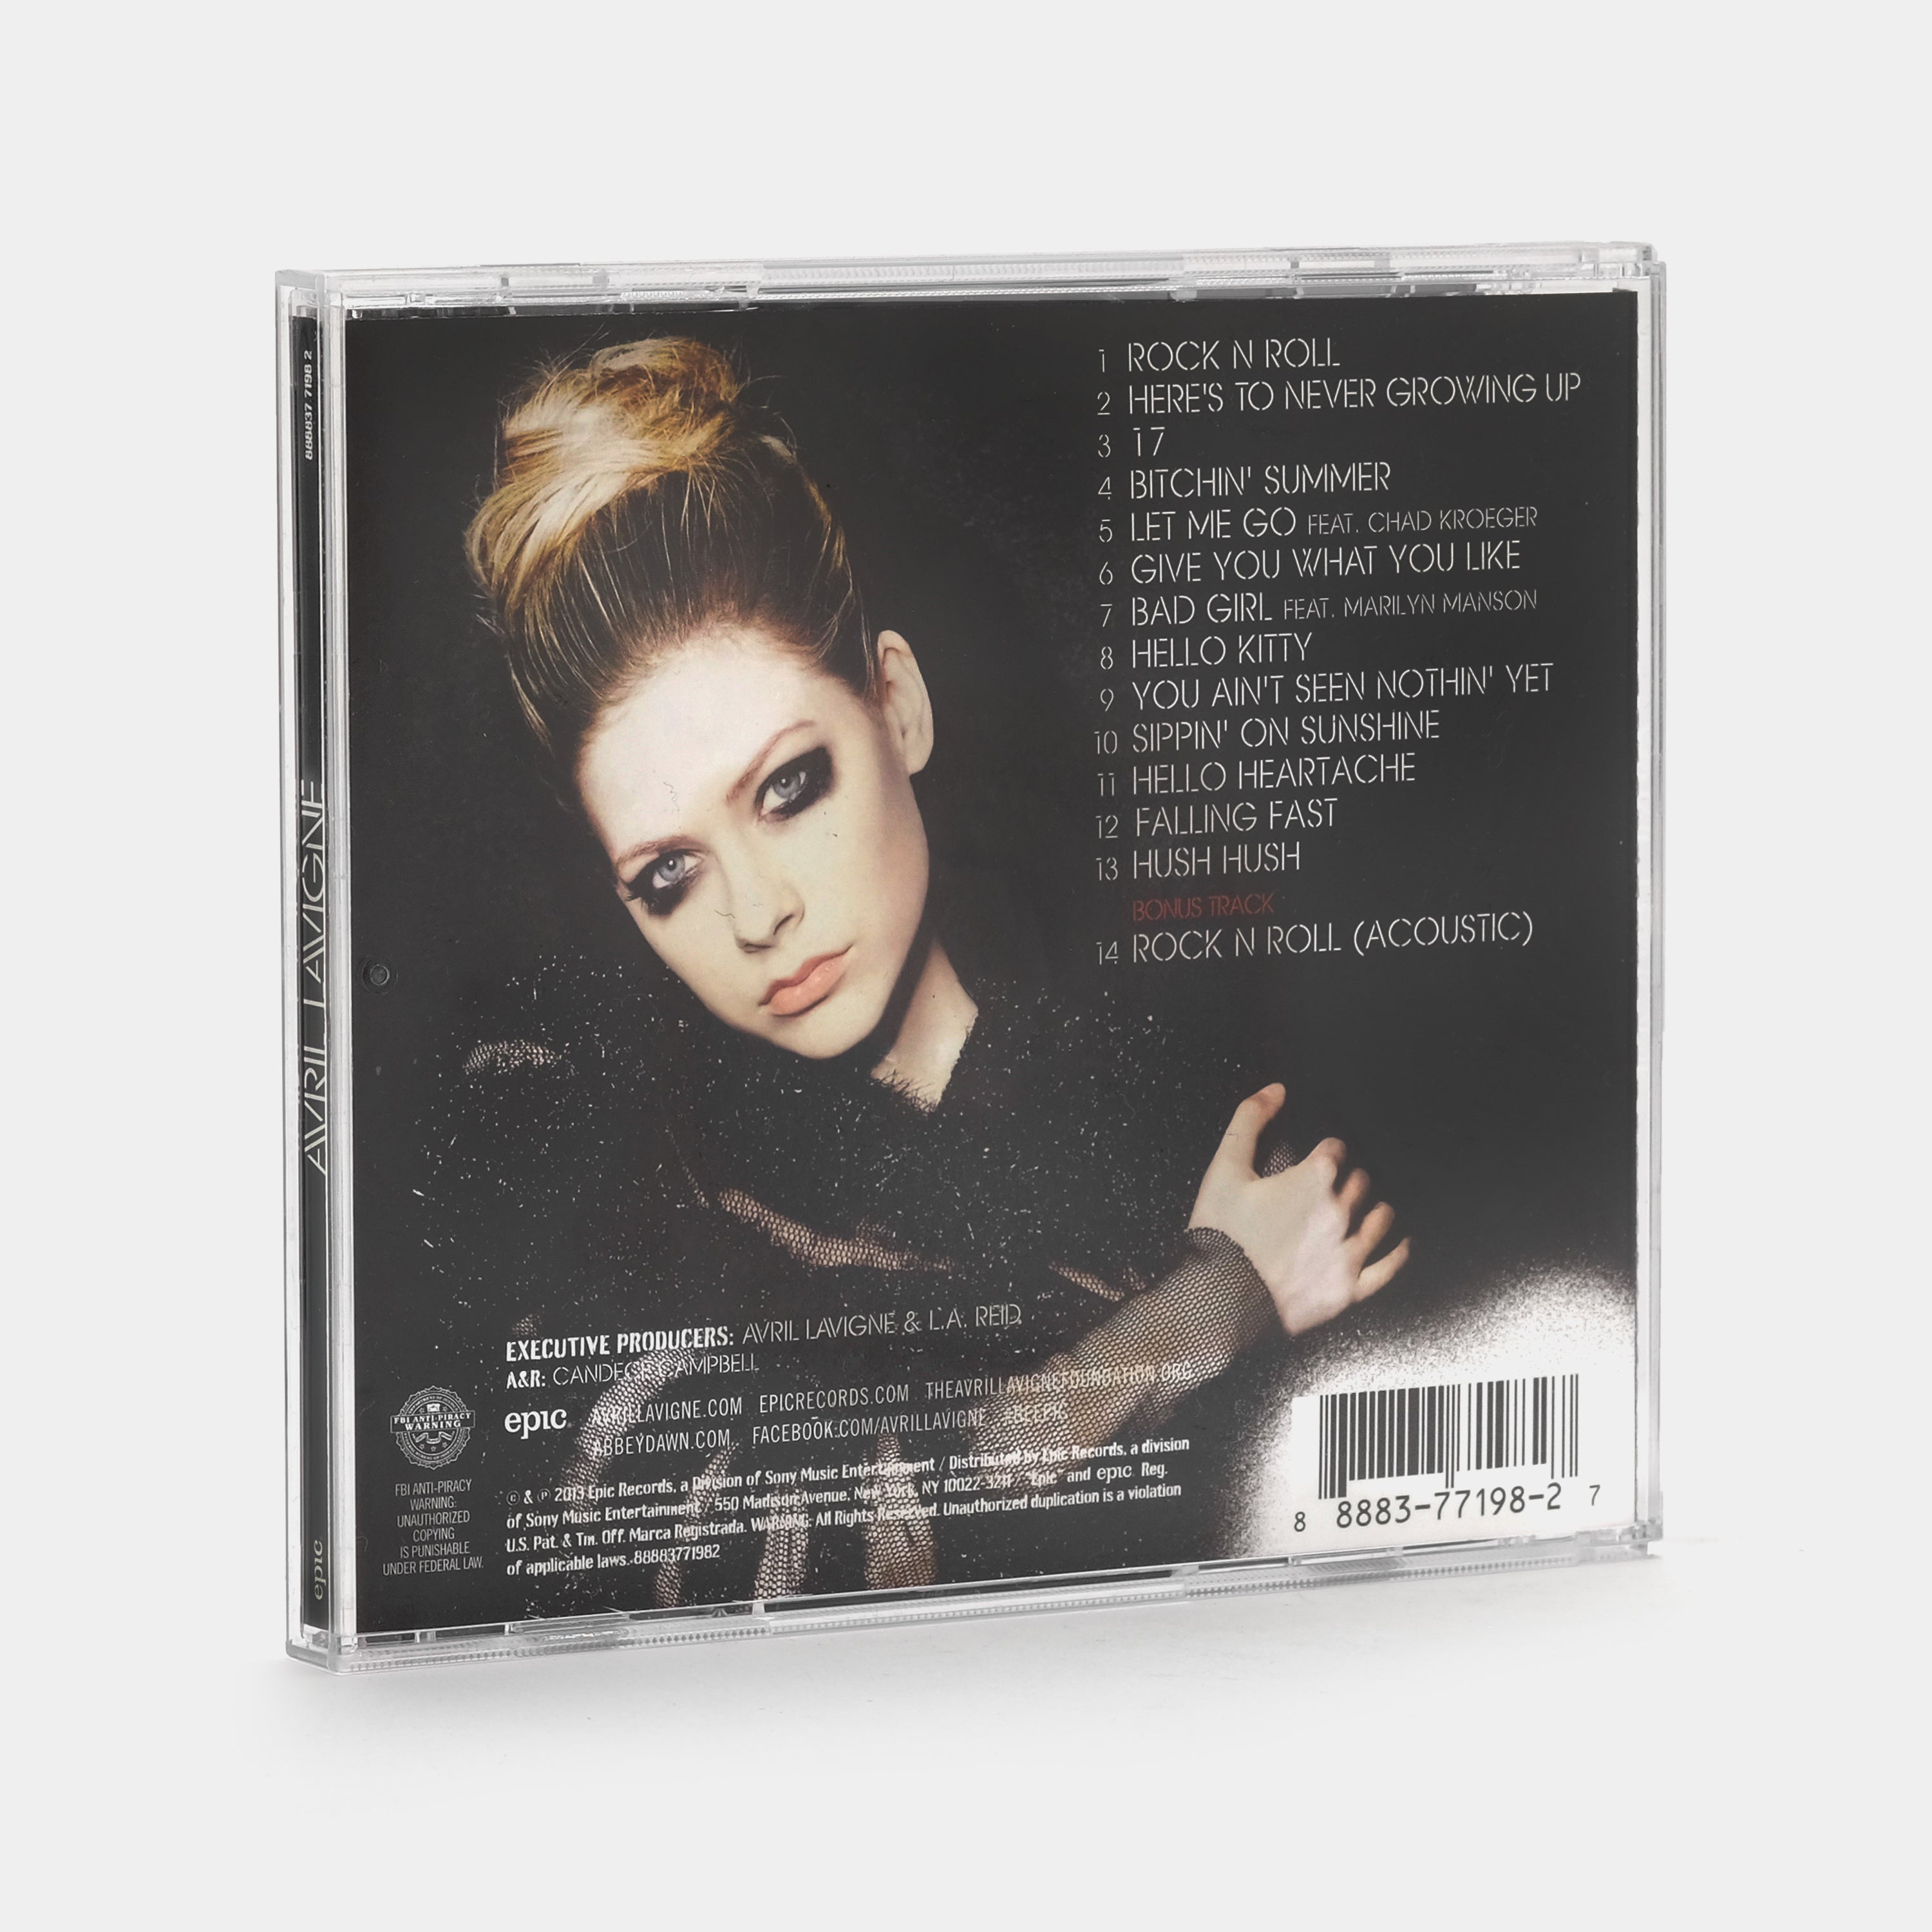 Avril Lavigne - Avril Lavigne CD